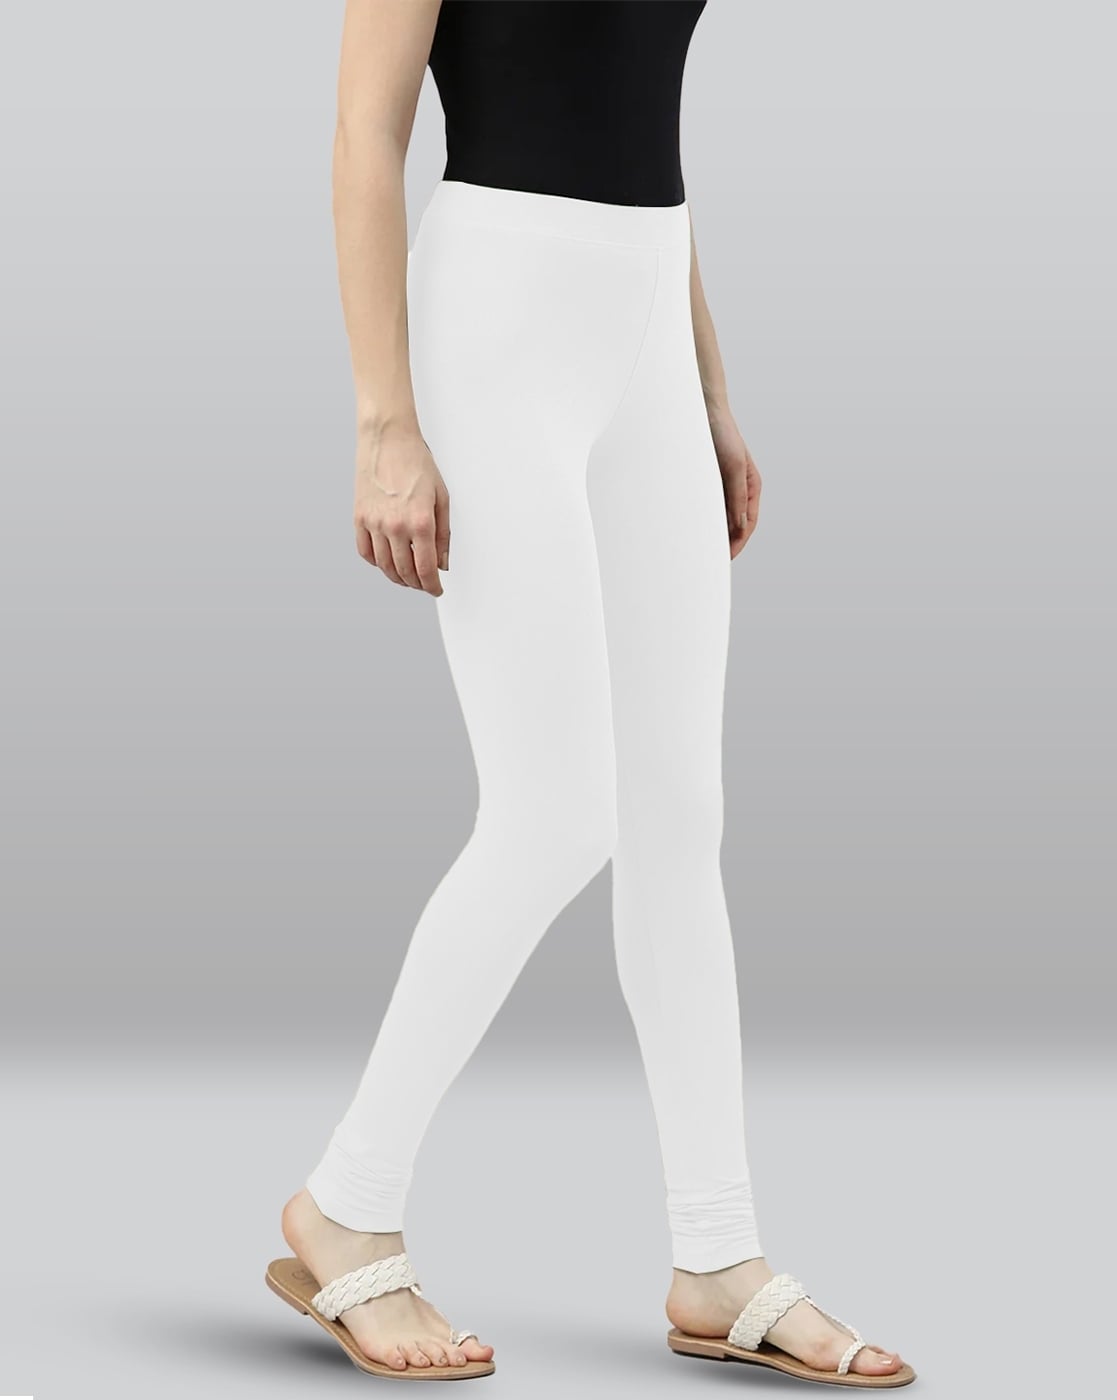 Buy Lyra Grey & White Cotton Leggings - Pack Of 2 for Women Online @ Tata  CLiQ